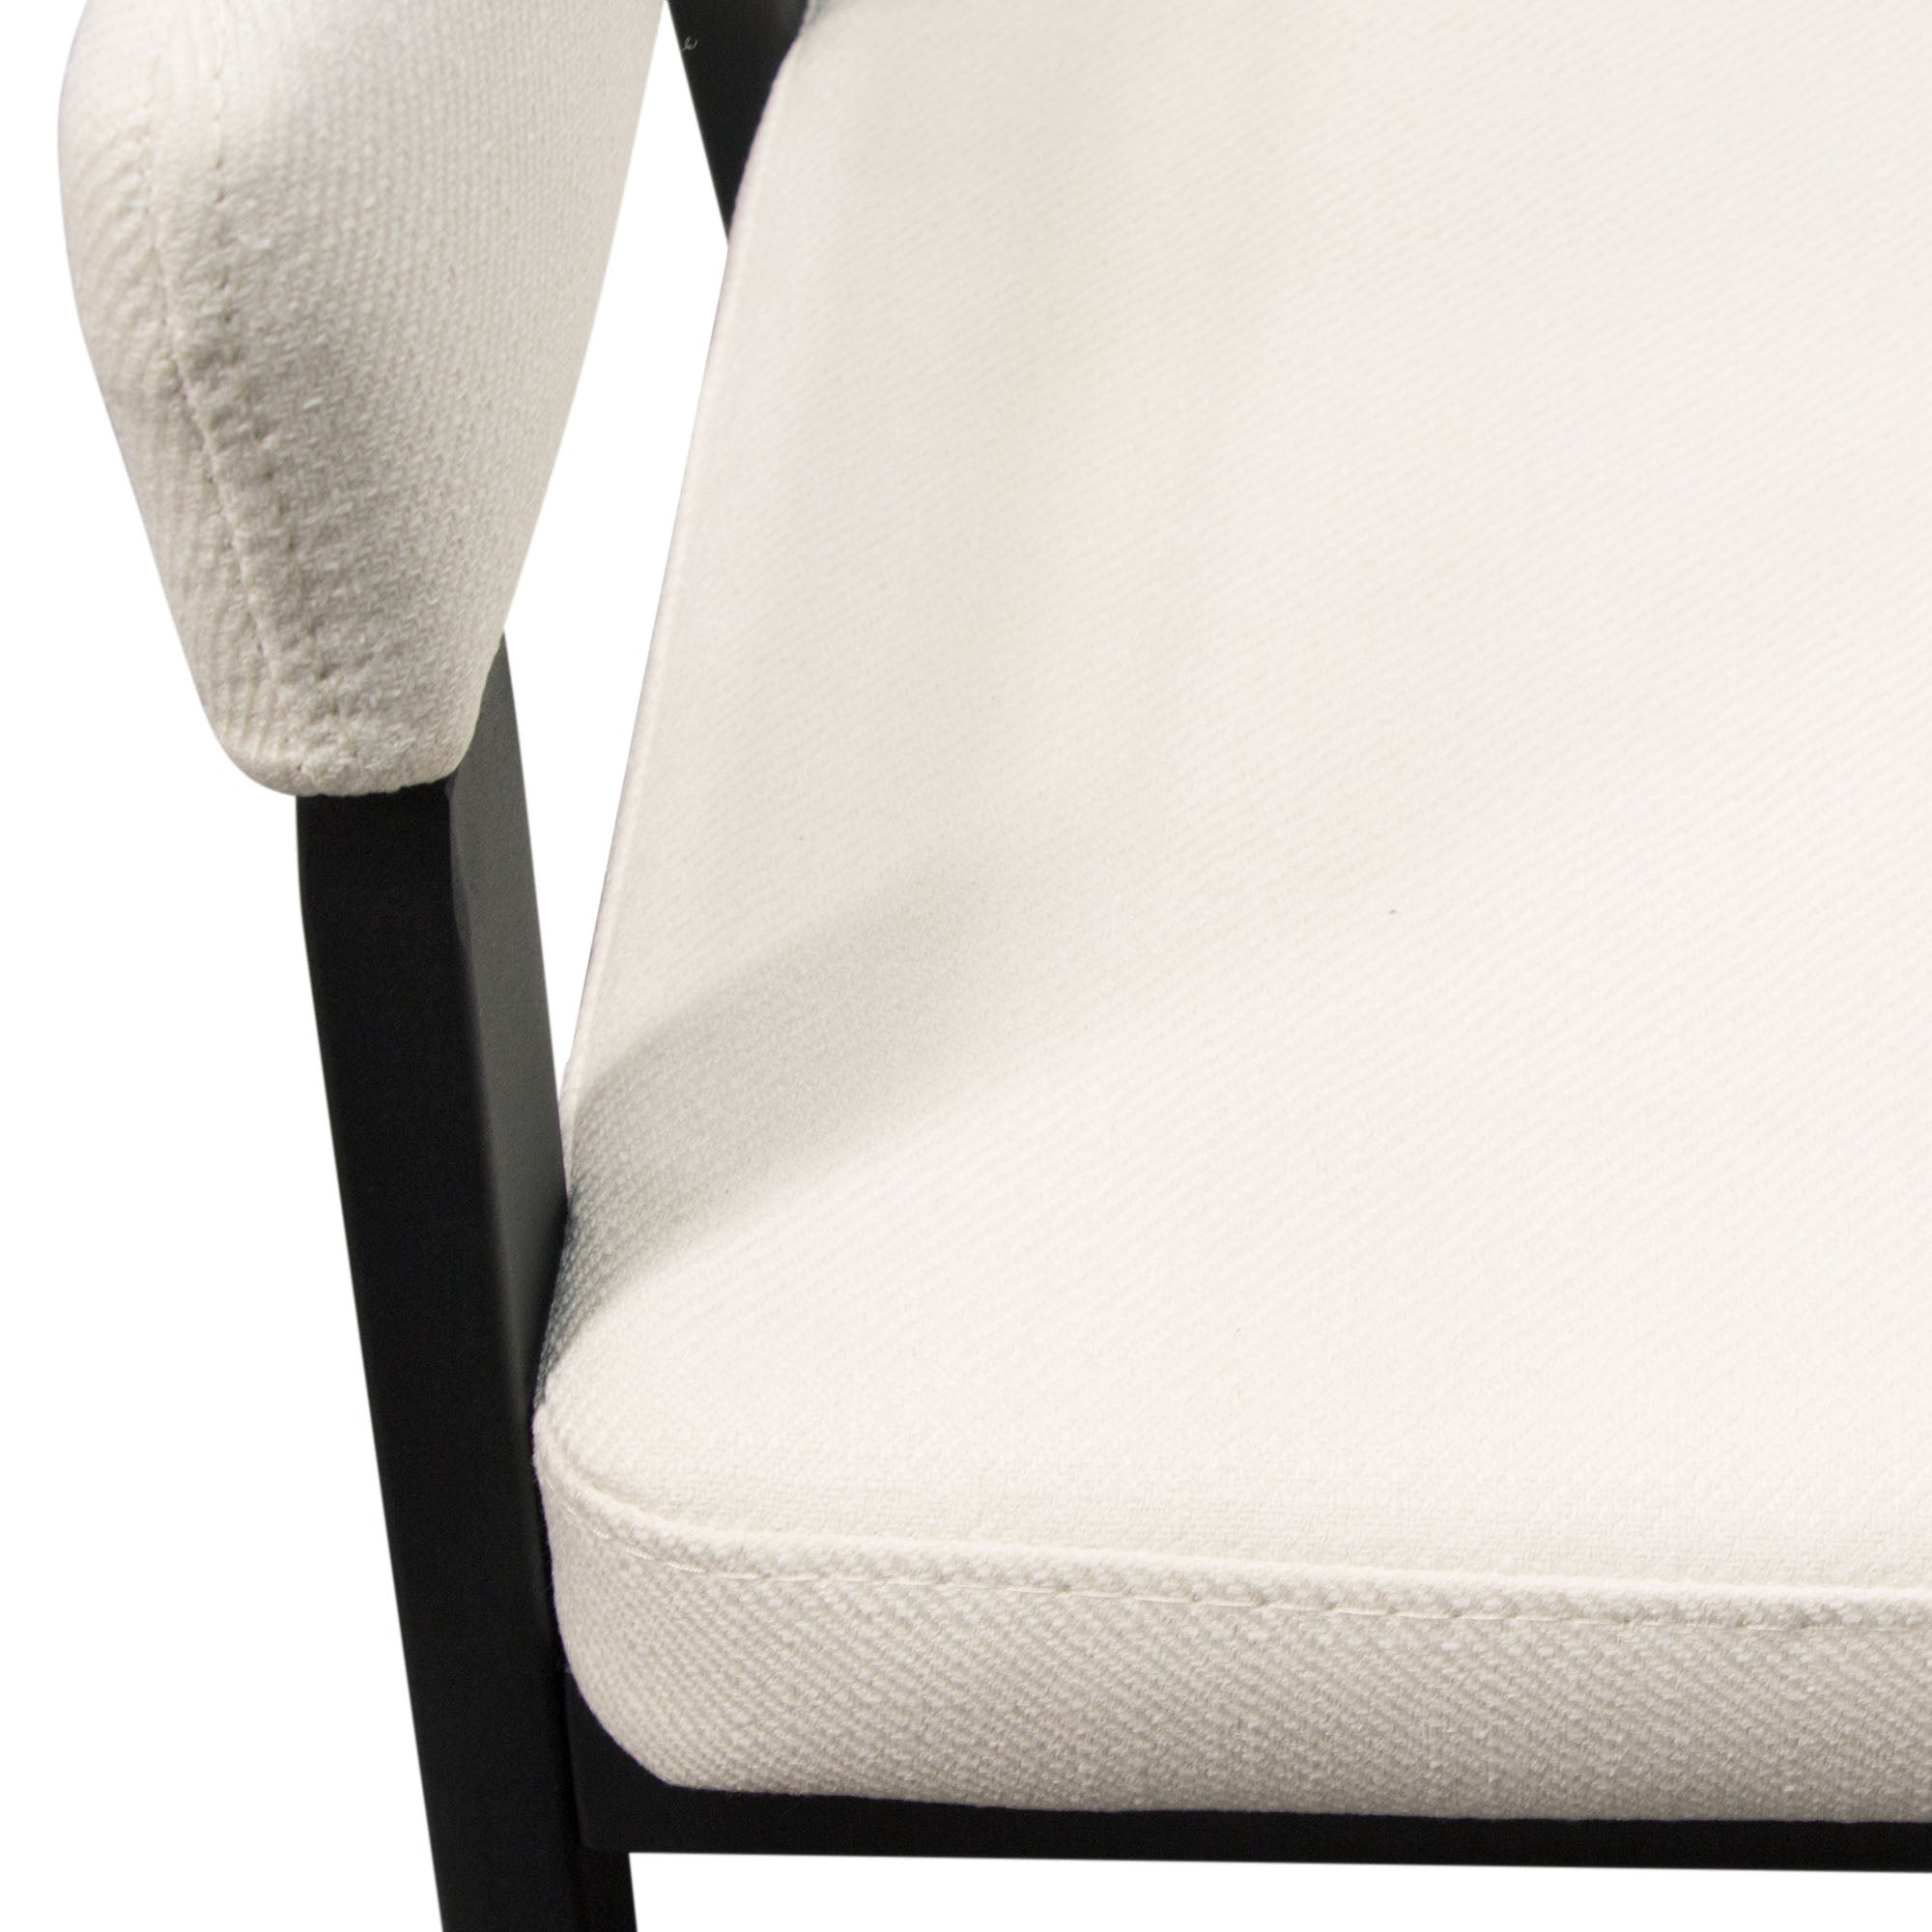 Diamond Sofa Adele Arm Chair